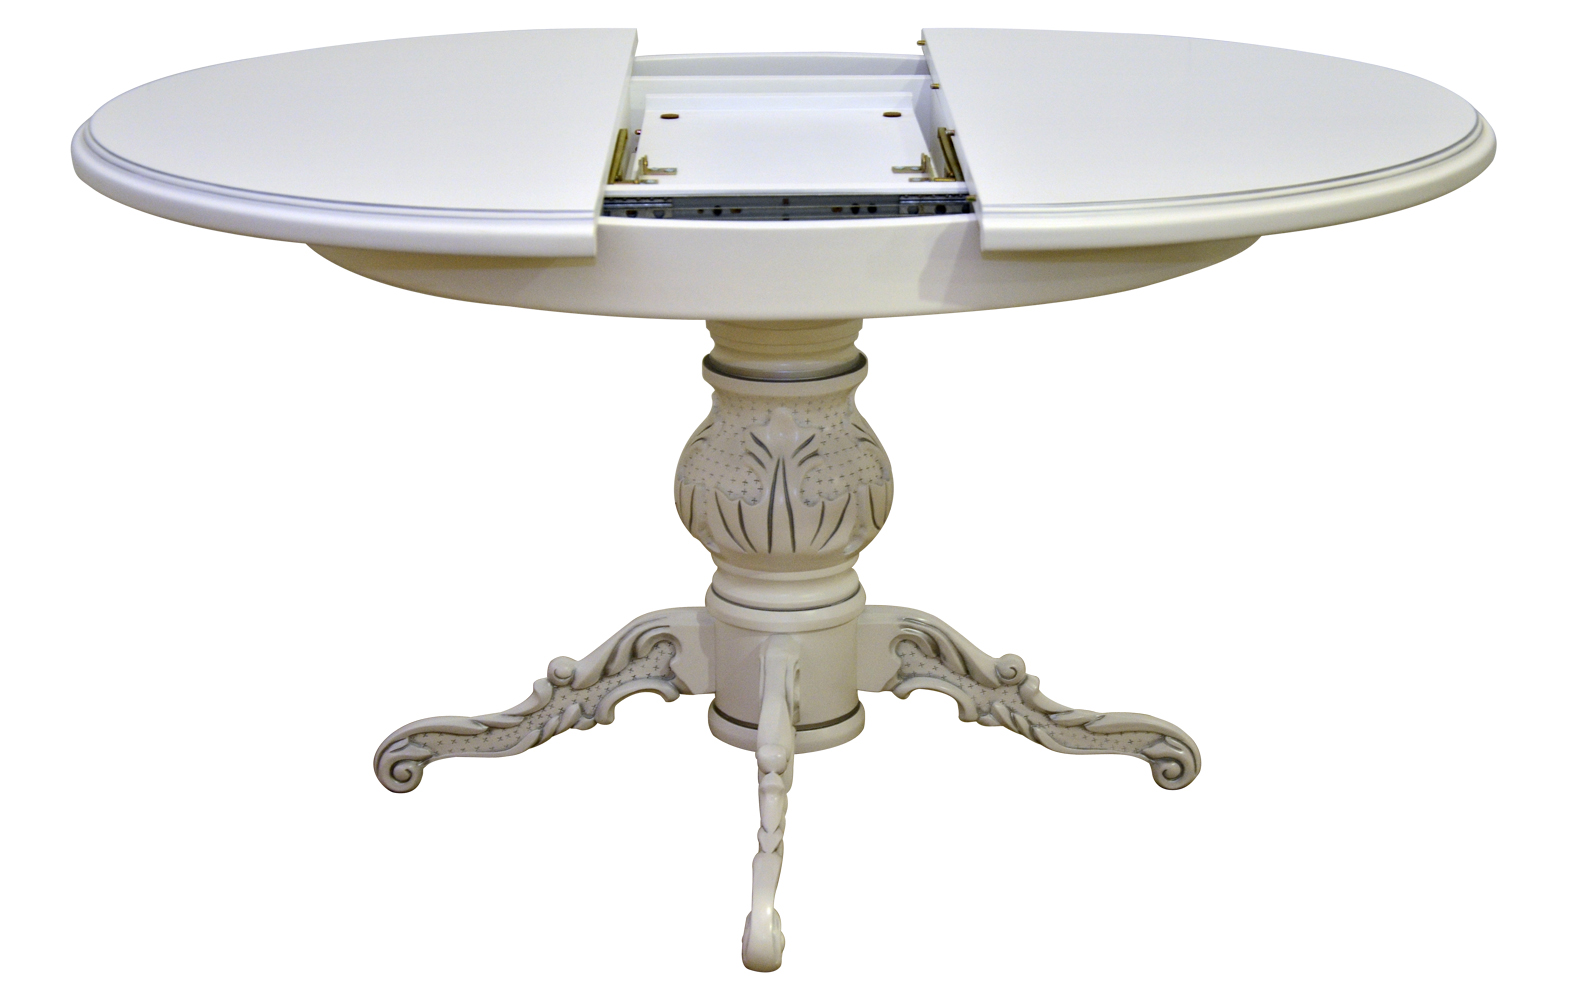 Стол версаль. Столы Гранд Версаль. Стол Сентра раздвижной овальный. "Версаль" 11 кпуглый стол обеденный. Стол Ромео овальный раскладной.